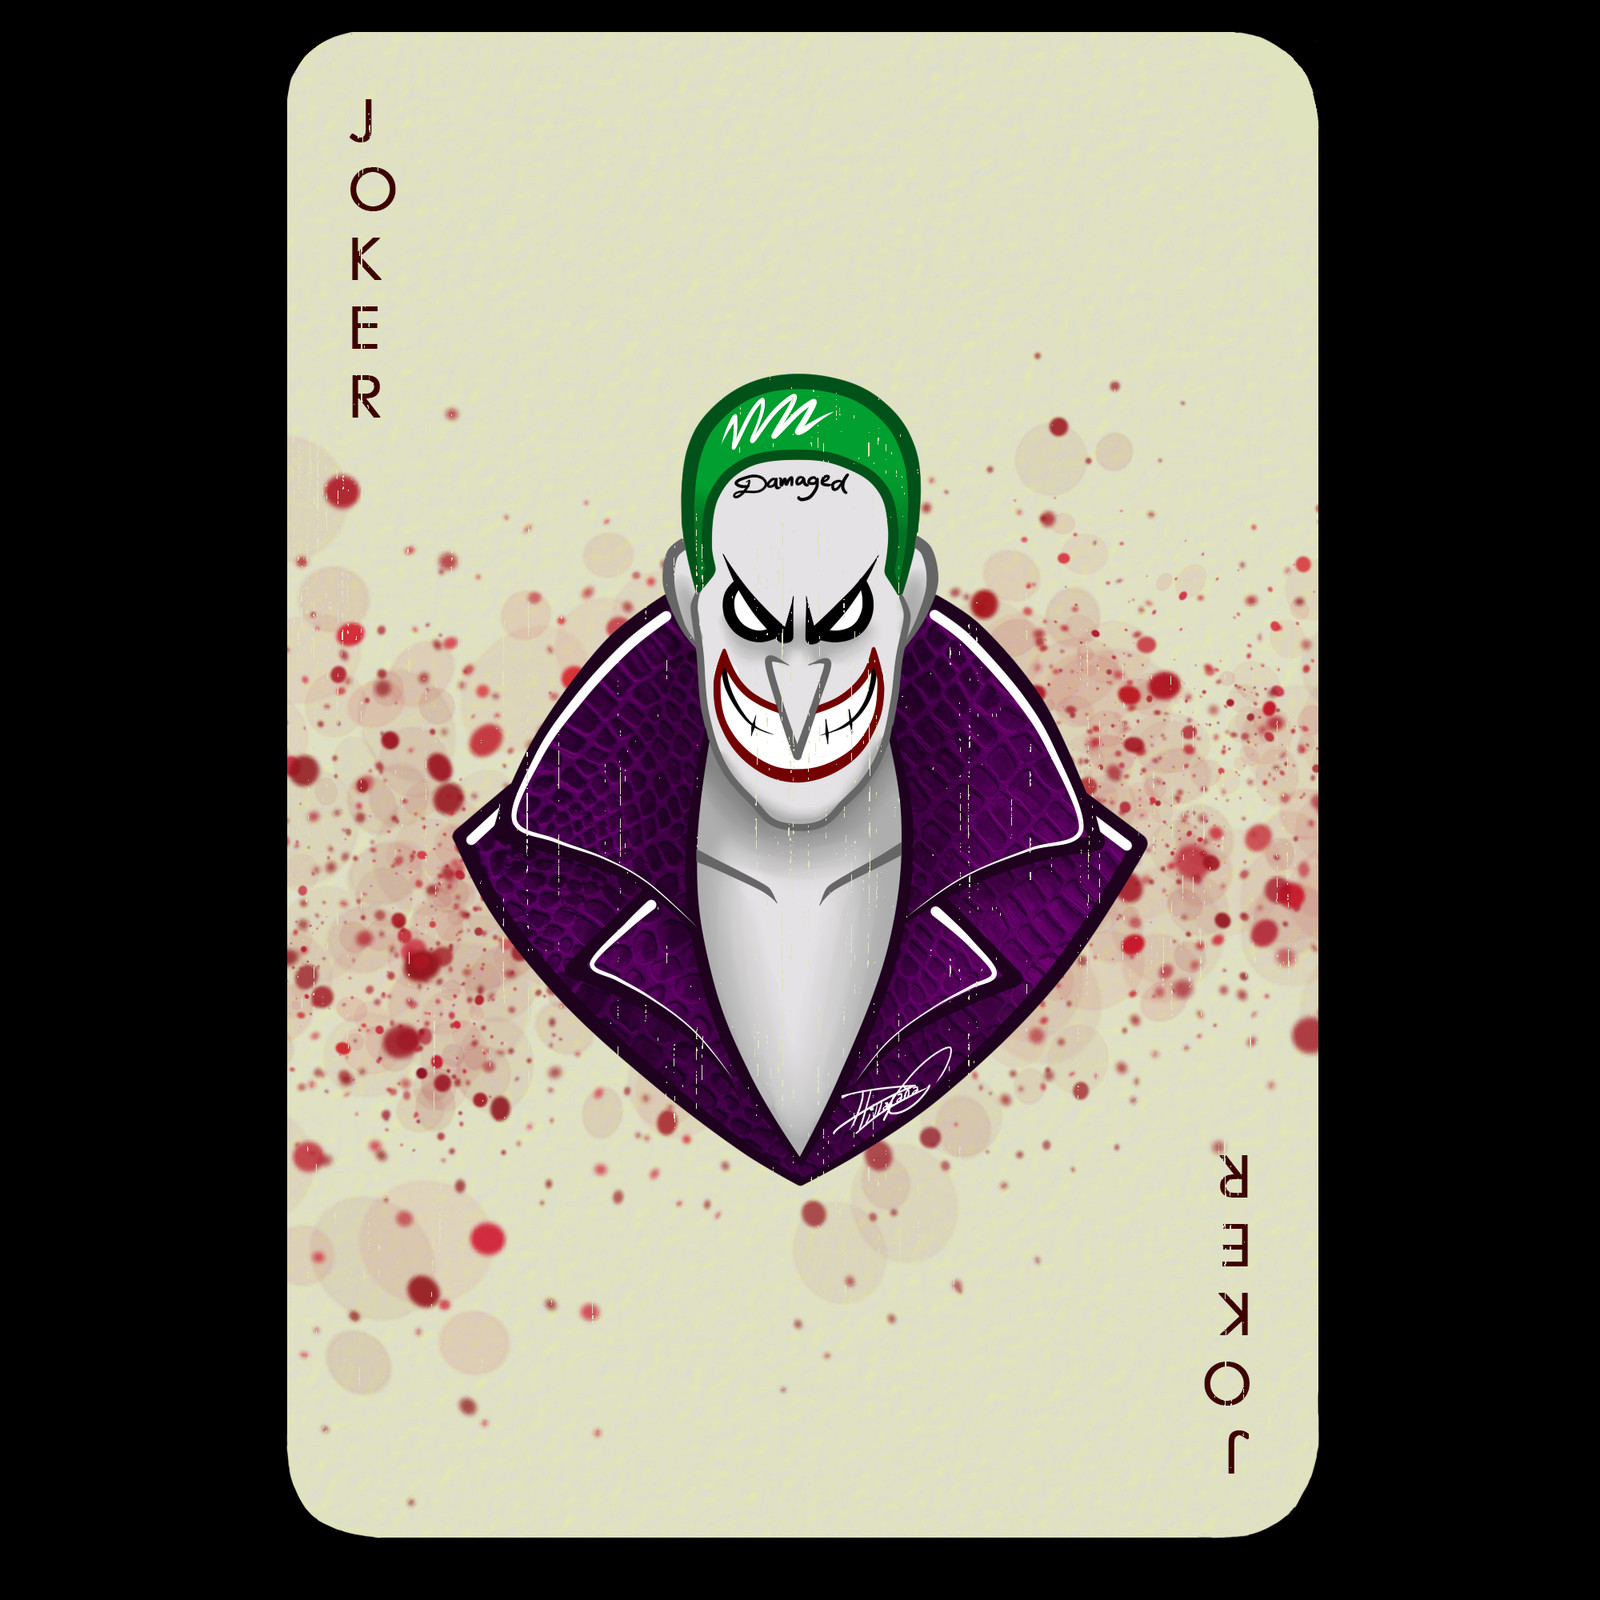 Diego Villafaña - The Joker Card.